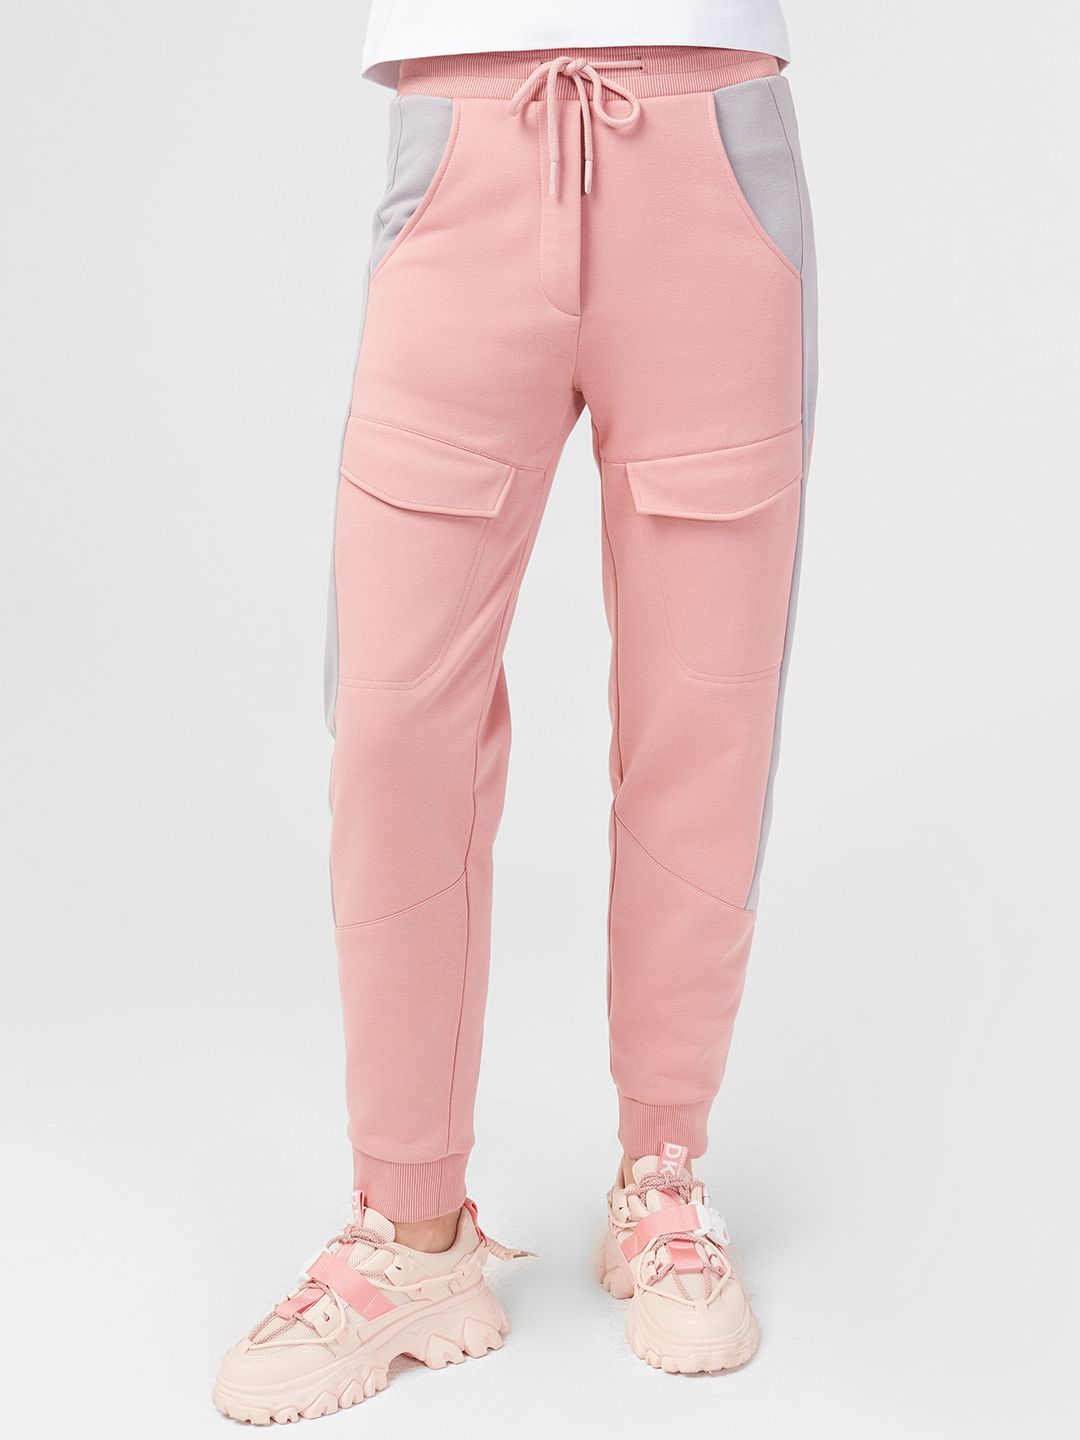 Спортивные брюки женские LO 1822211409 розовые 44 RU